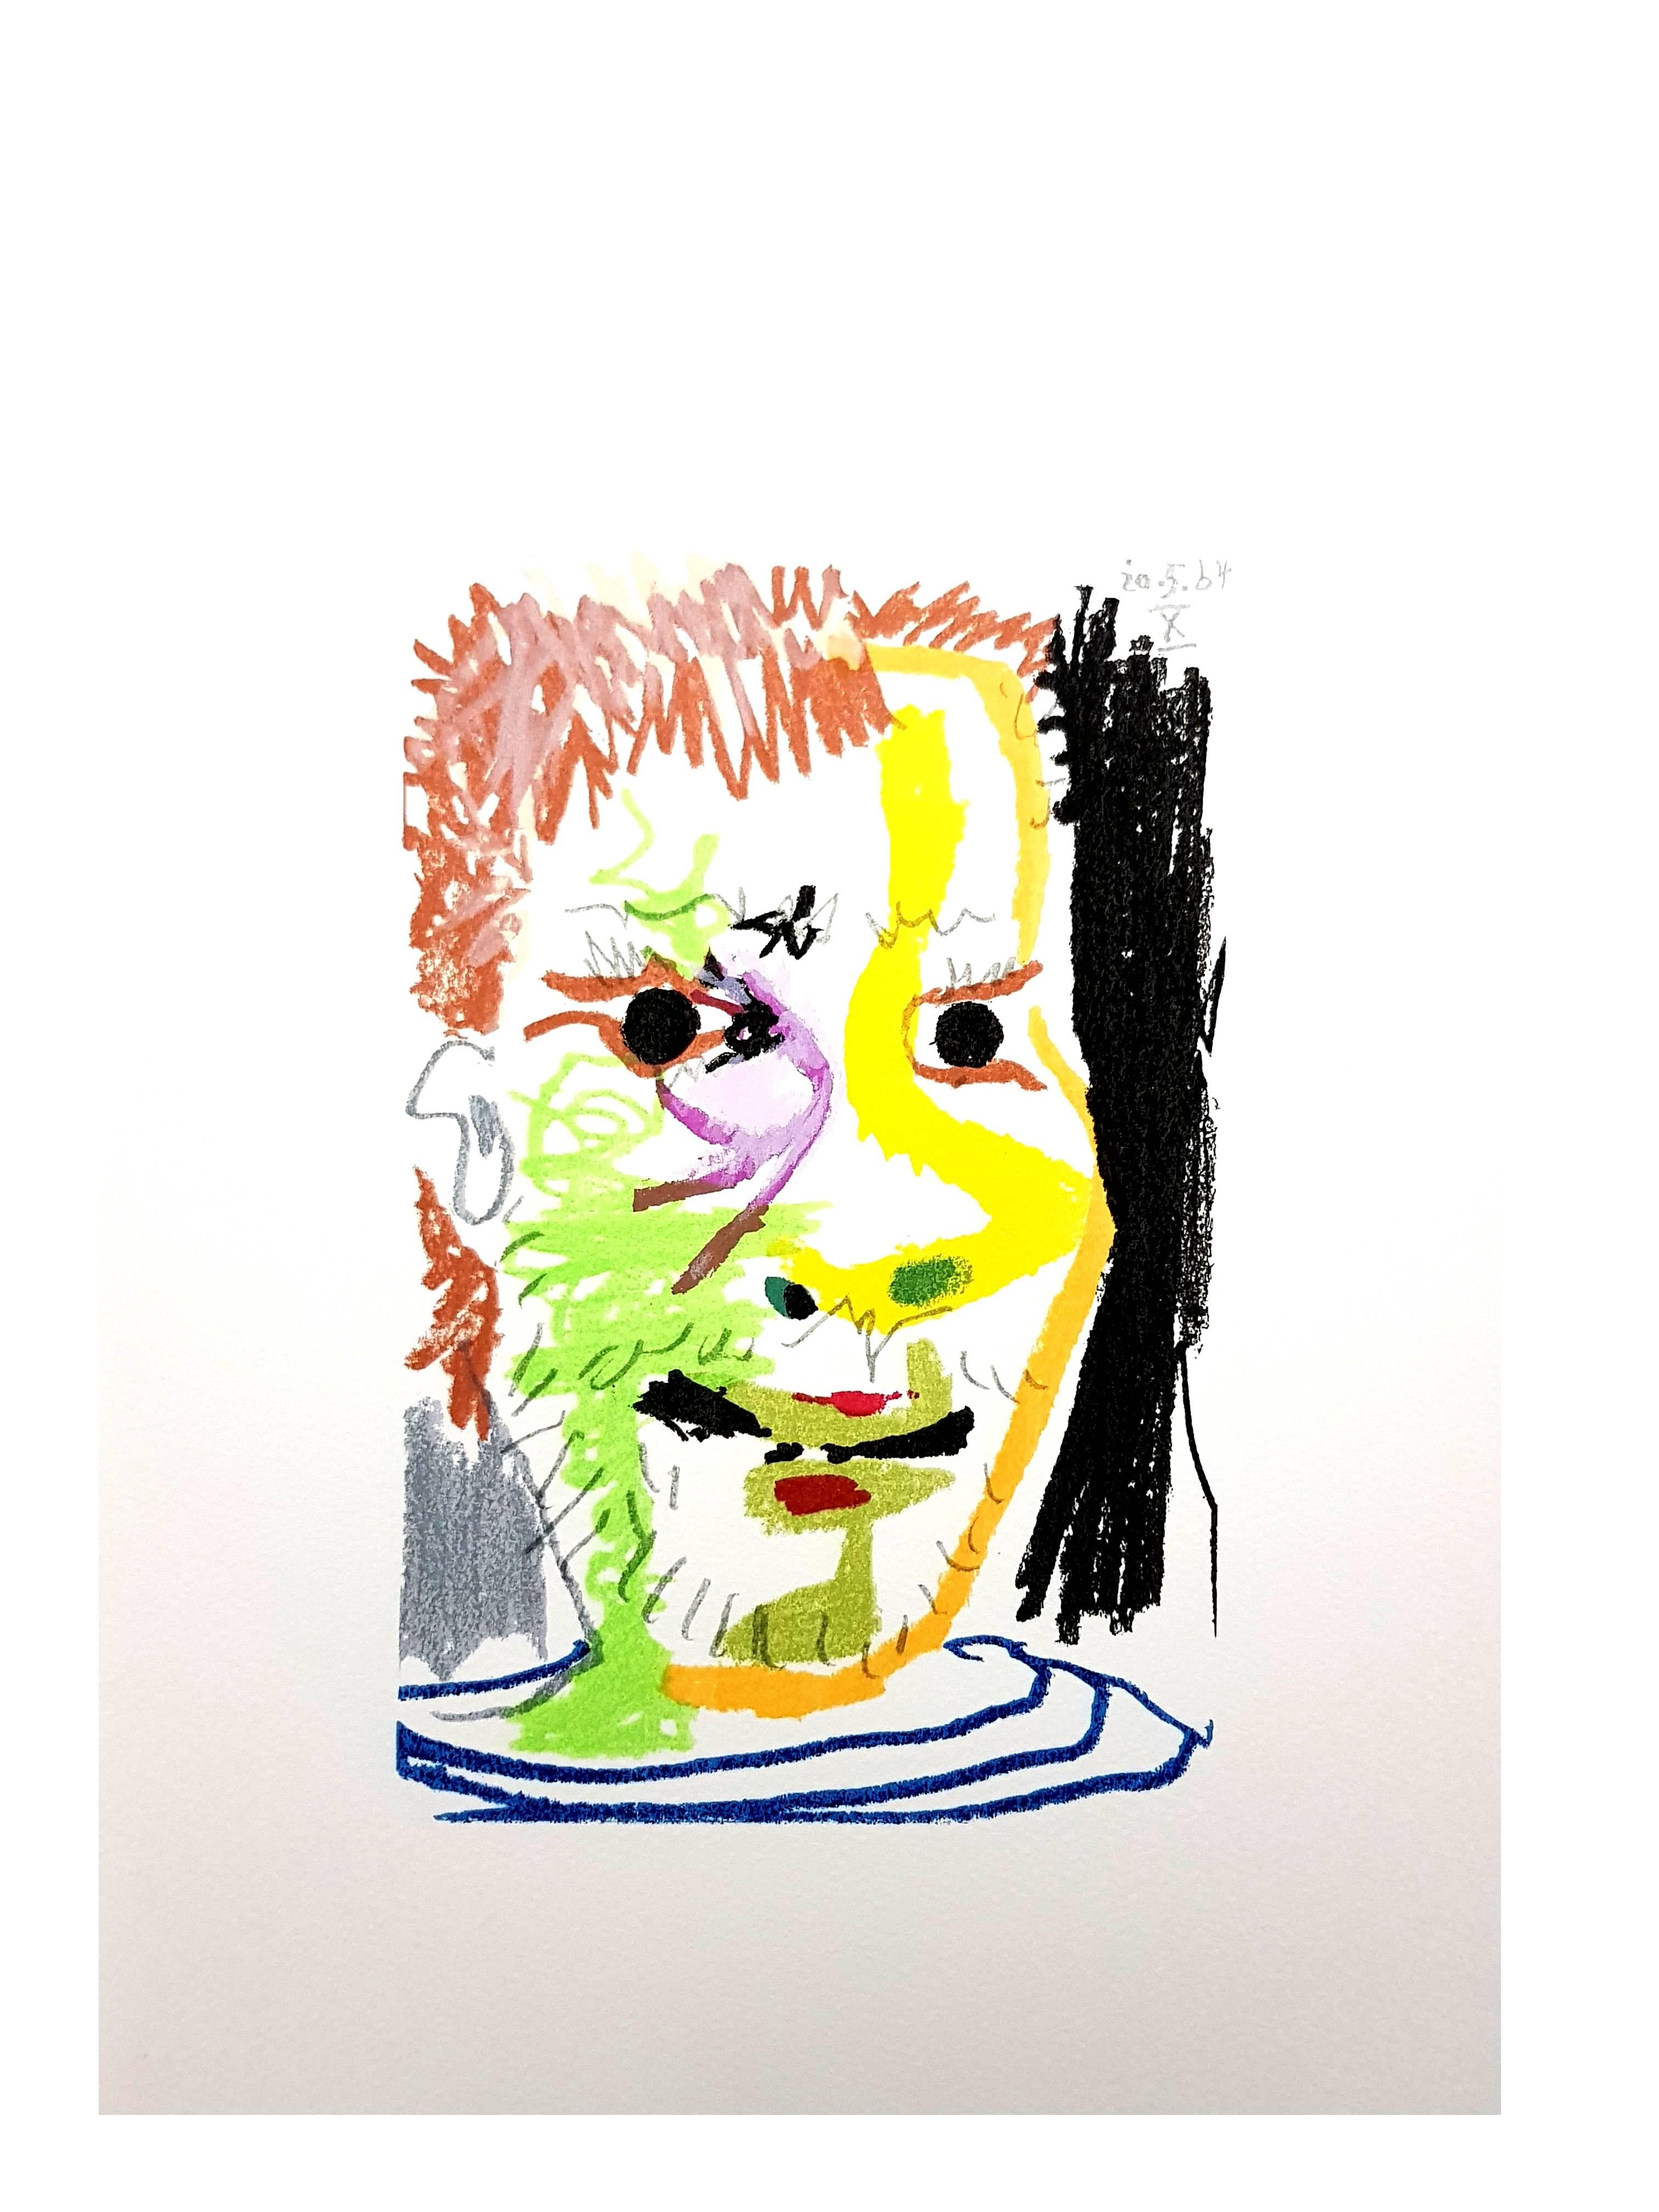 Artistics : Pablo Picasso (d'après)
Support : lithographie, papier Arches
Portfolio : Le Goût de Bonheur
Année : 1970
Édition : Total de 1998 exemplaires (666 en allemand, français et anglais)
Taille de la feuille : 13